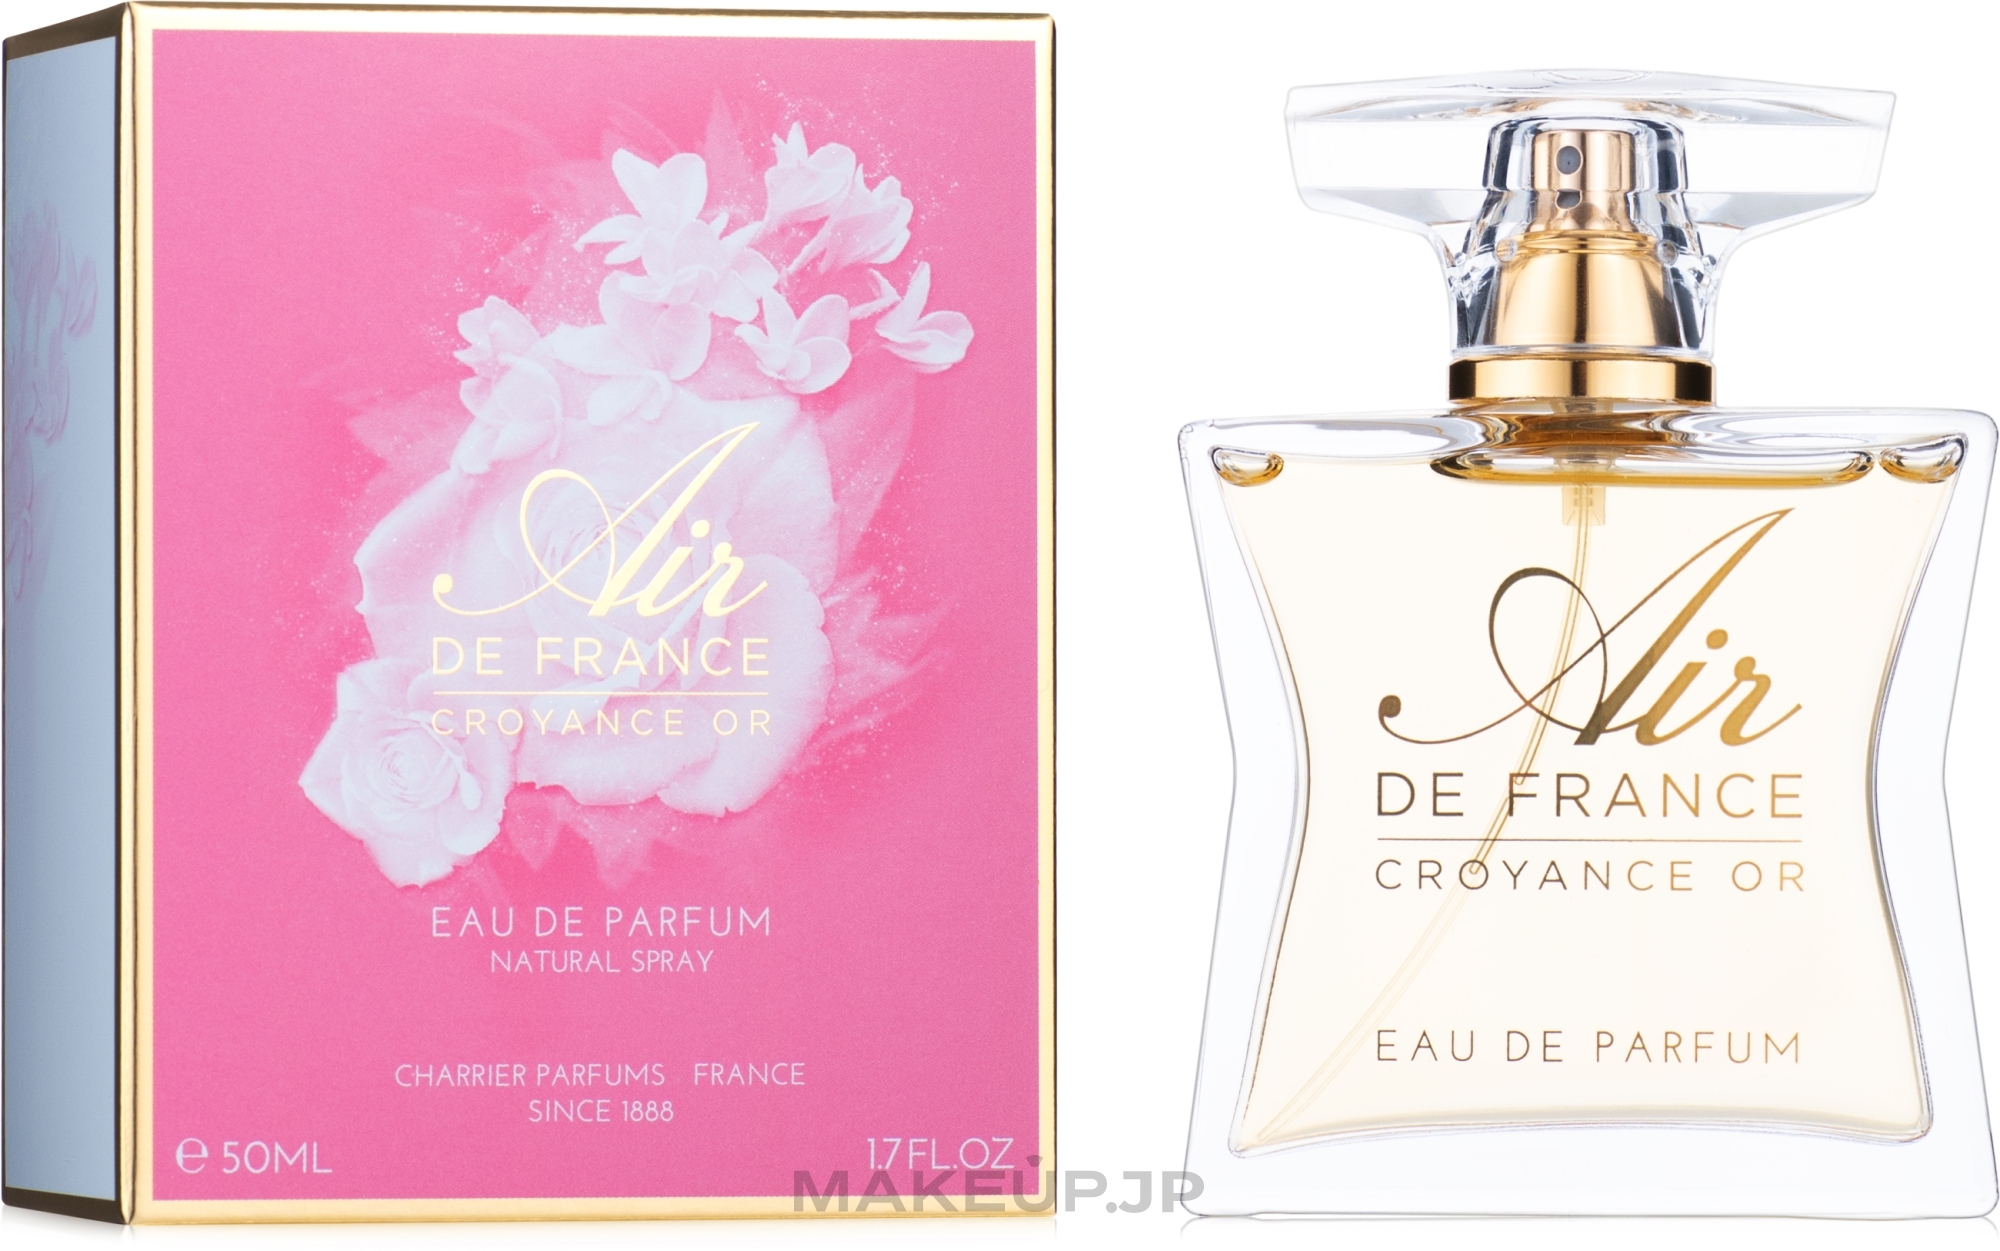 Charrier Parfums Air de France Croyance Or - Eau de Parfum — photo 50 ml